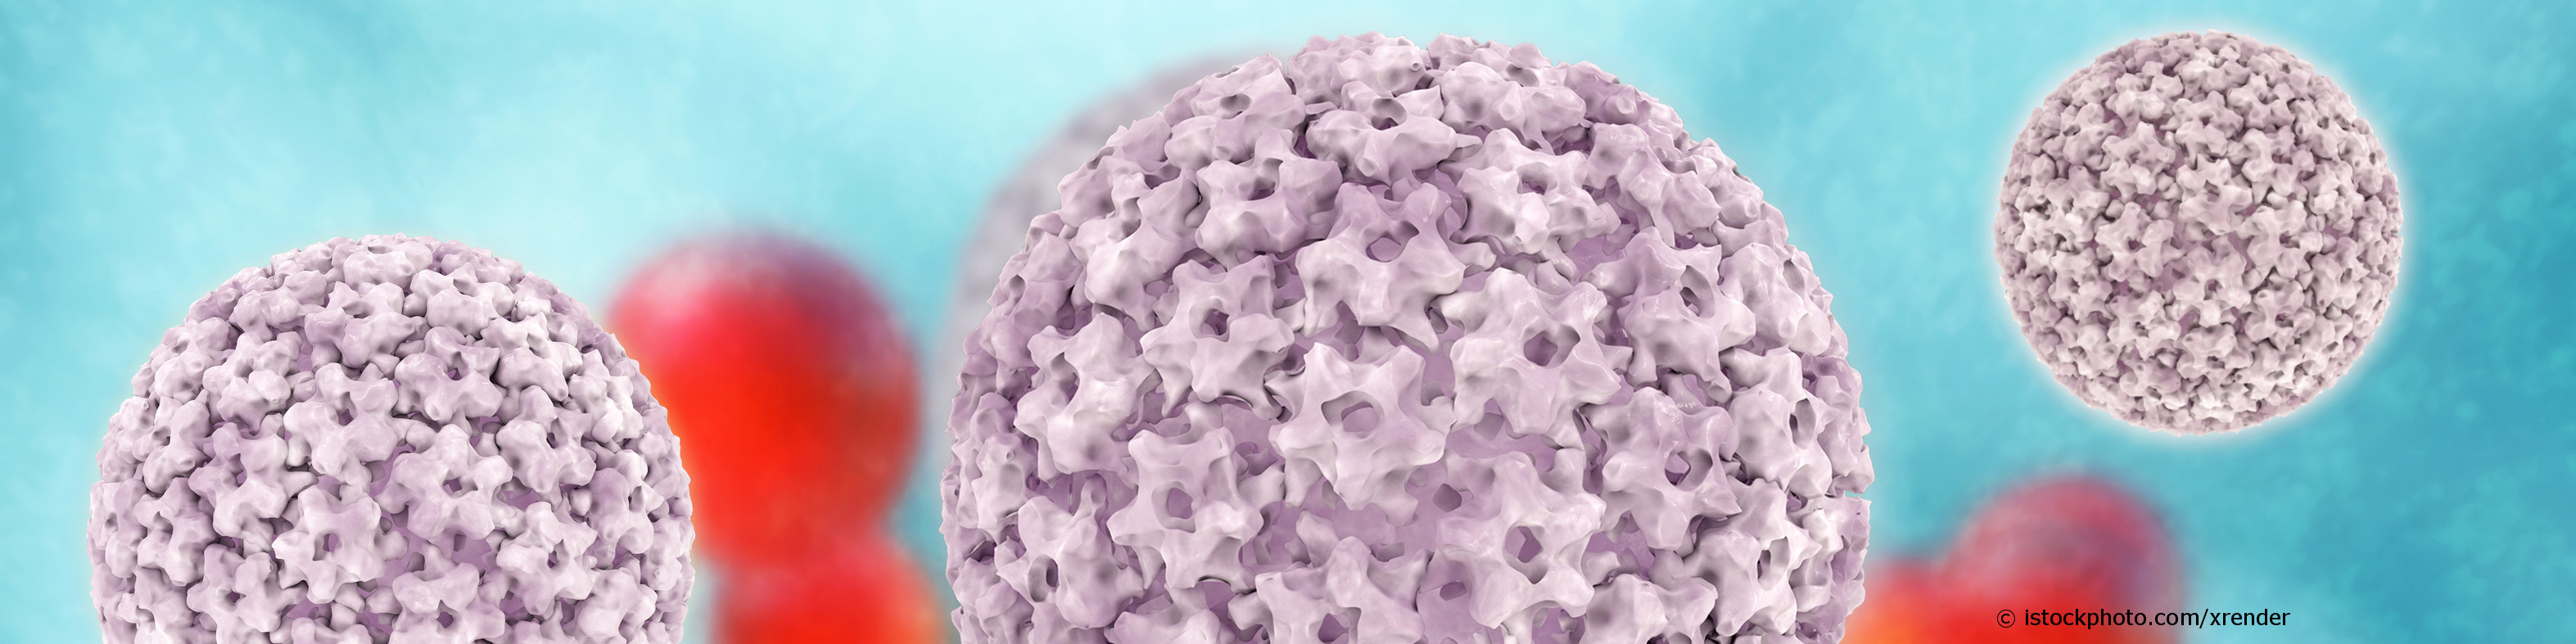 Humane Papillomviren, kurz HPV, können auch Hautwarzen und Genitalwarzen hervorrufen.